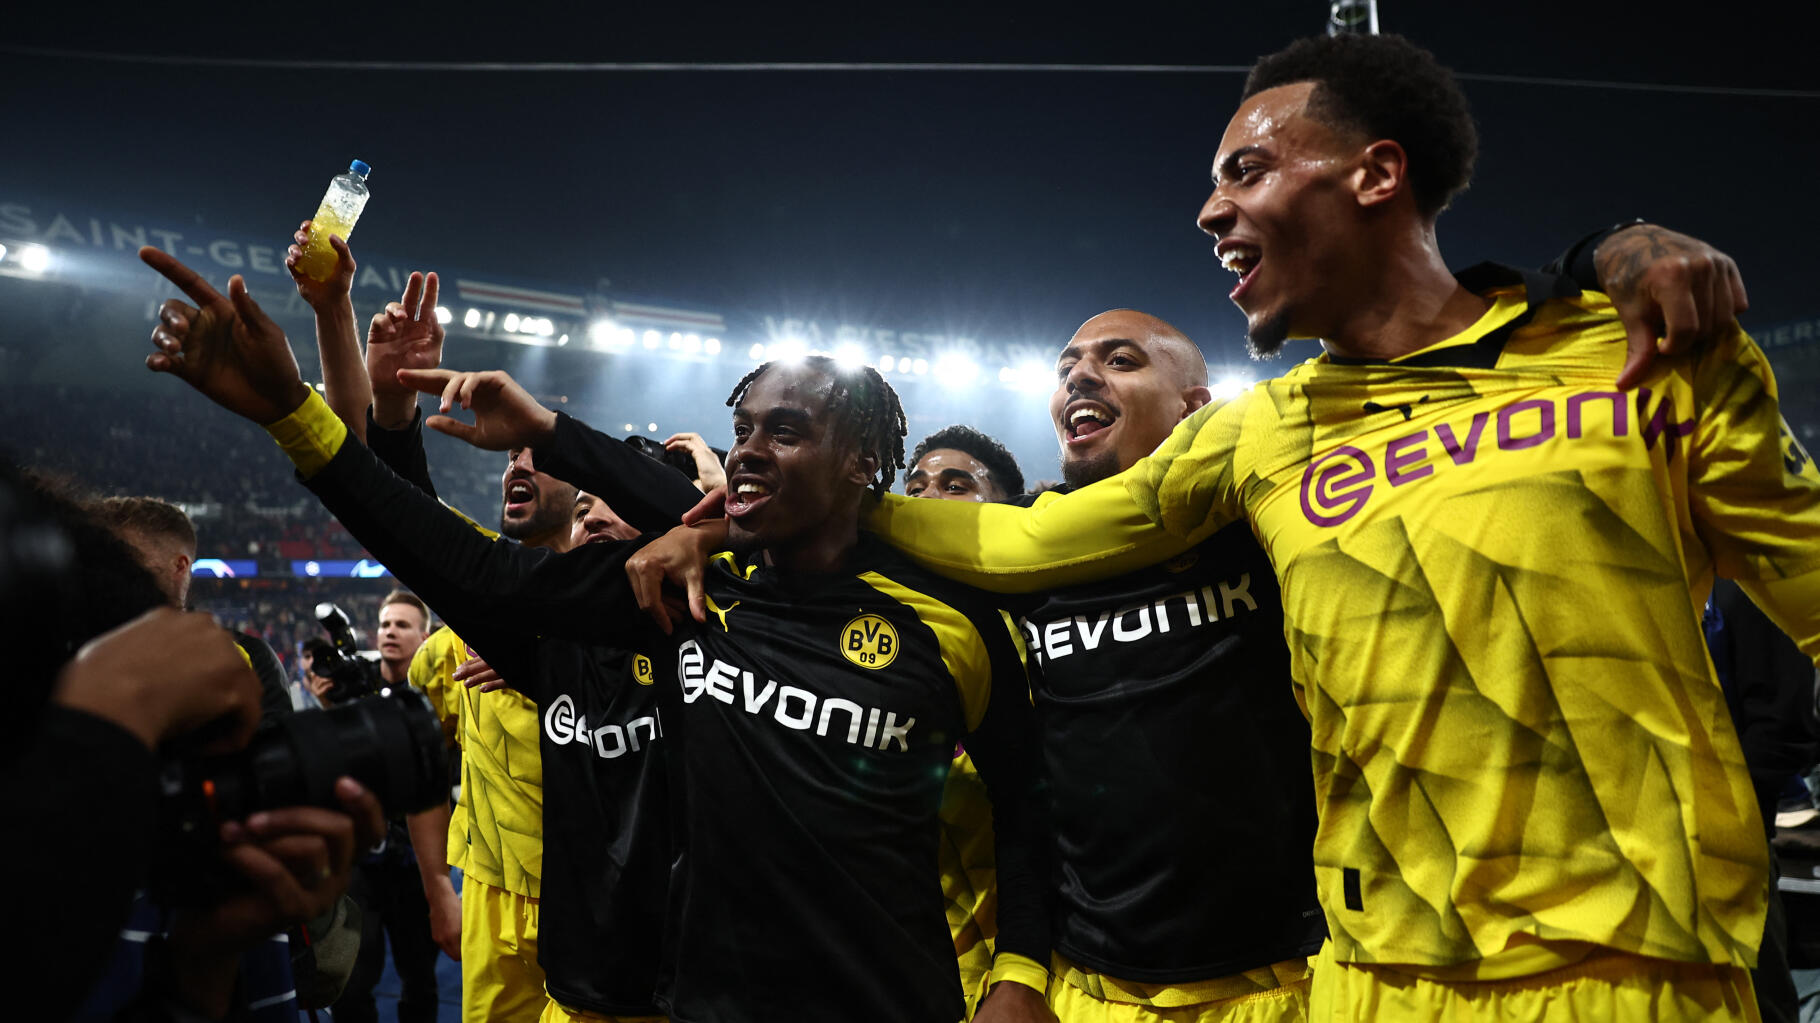   Le Borussia Dortmund trolle durement le PSG au lendemain de sa qualification  